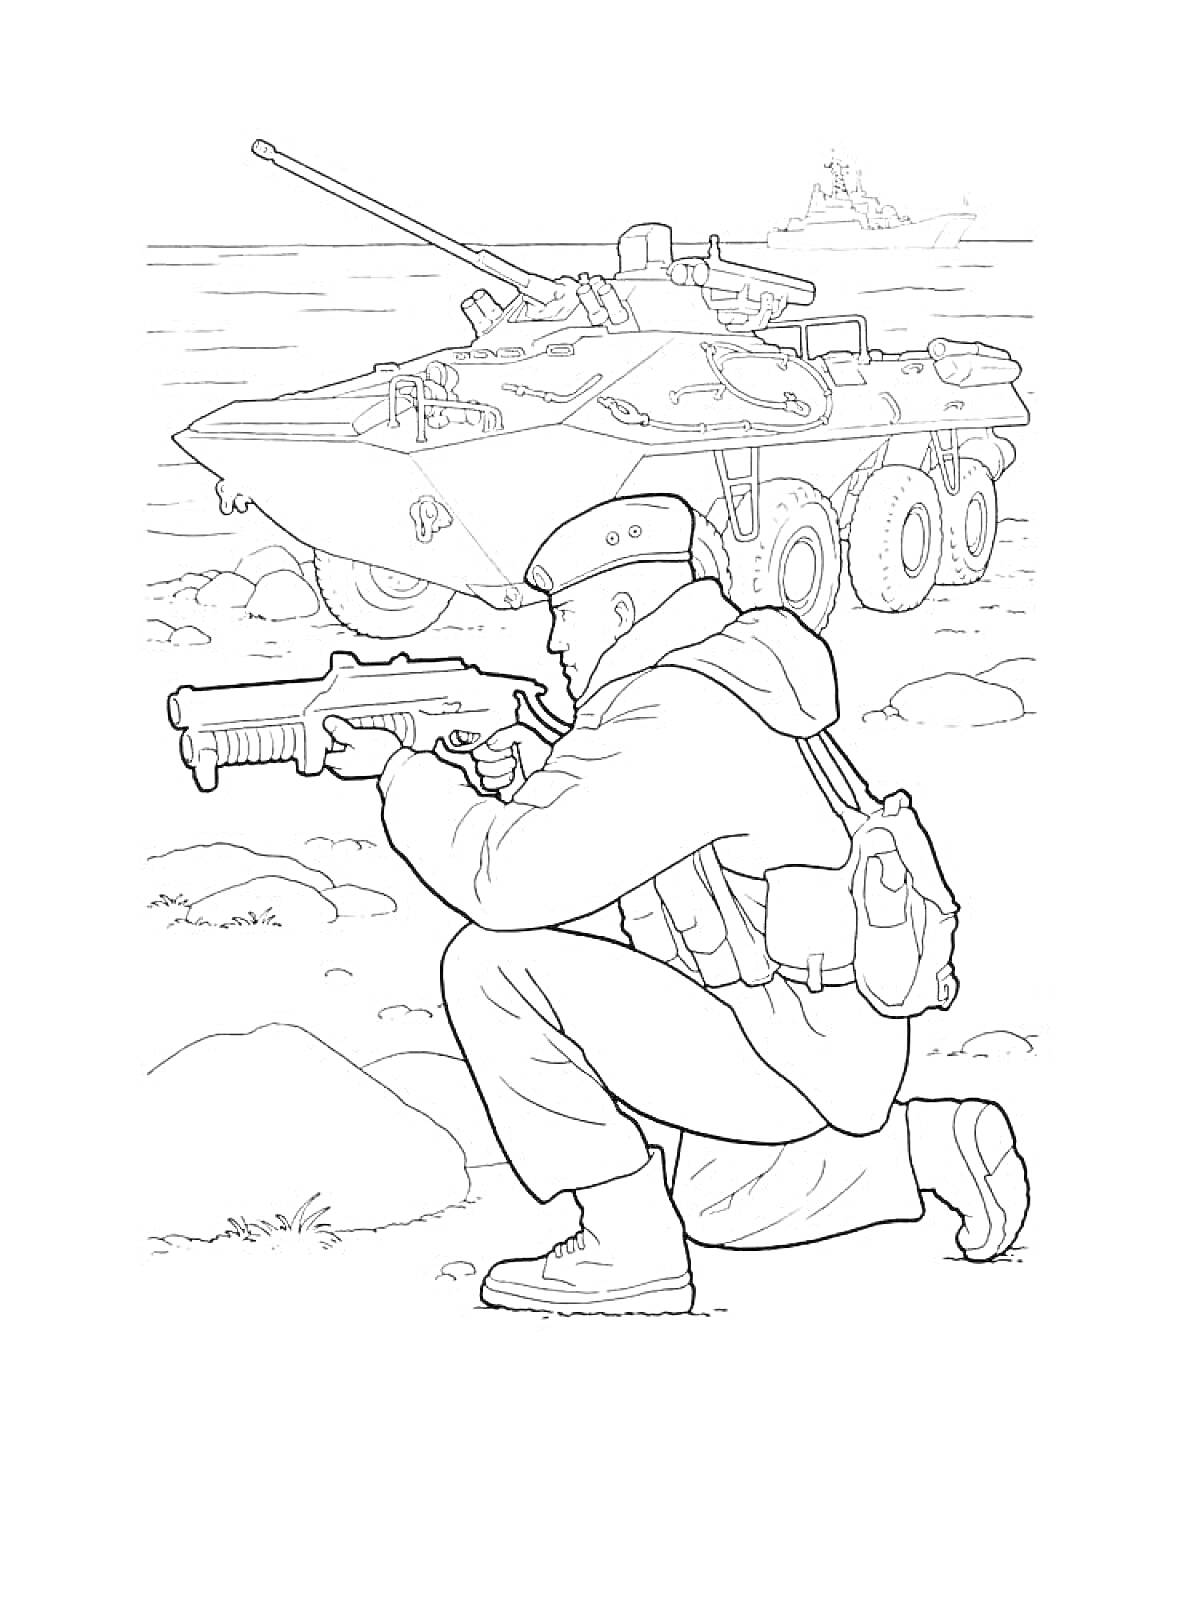 РаскраскаСолдат с оружием на фоне военной бронированной машины